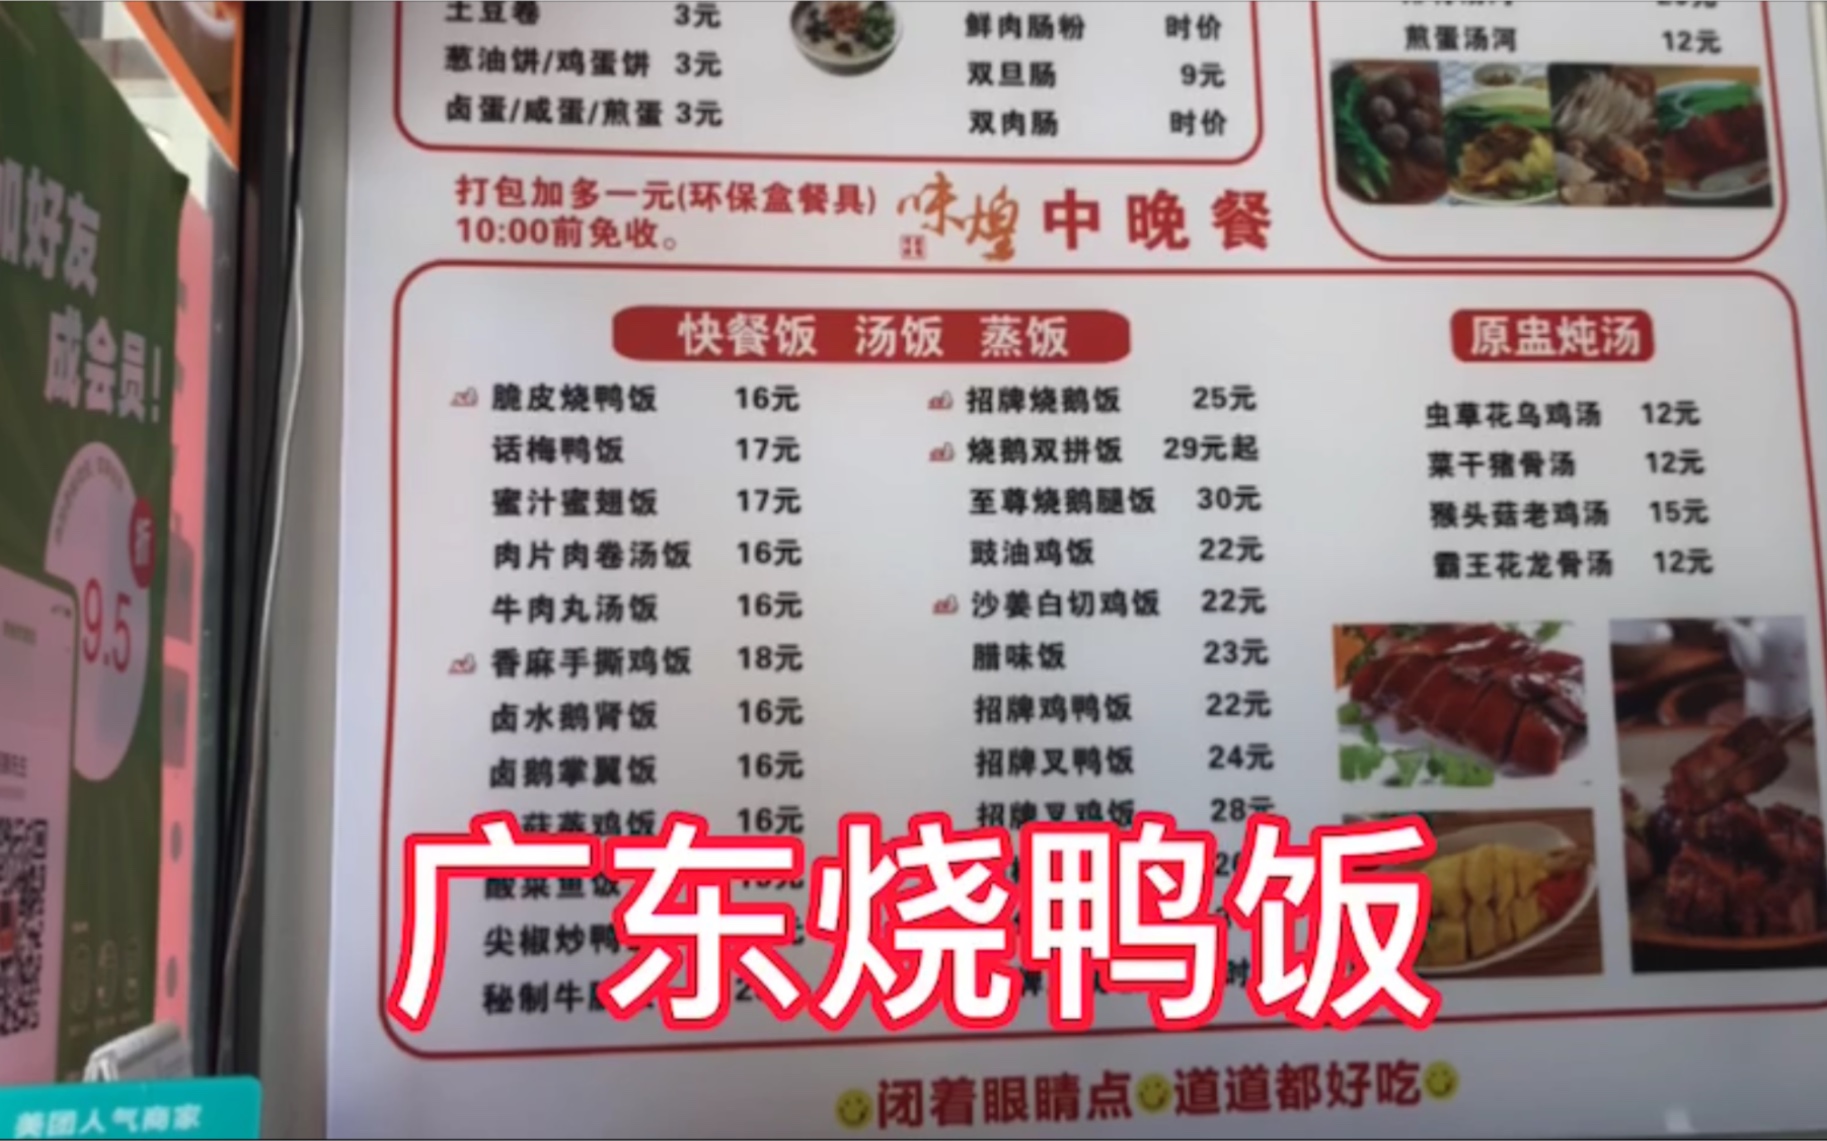 珠海拱北口岸吃广东正中烧鸭饭,两人才吃了41块钱,很划算